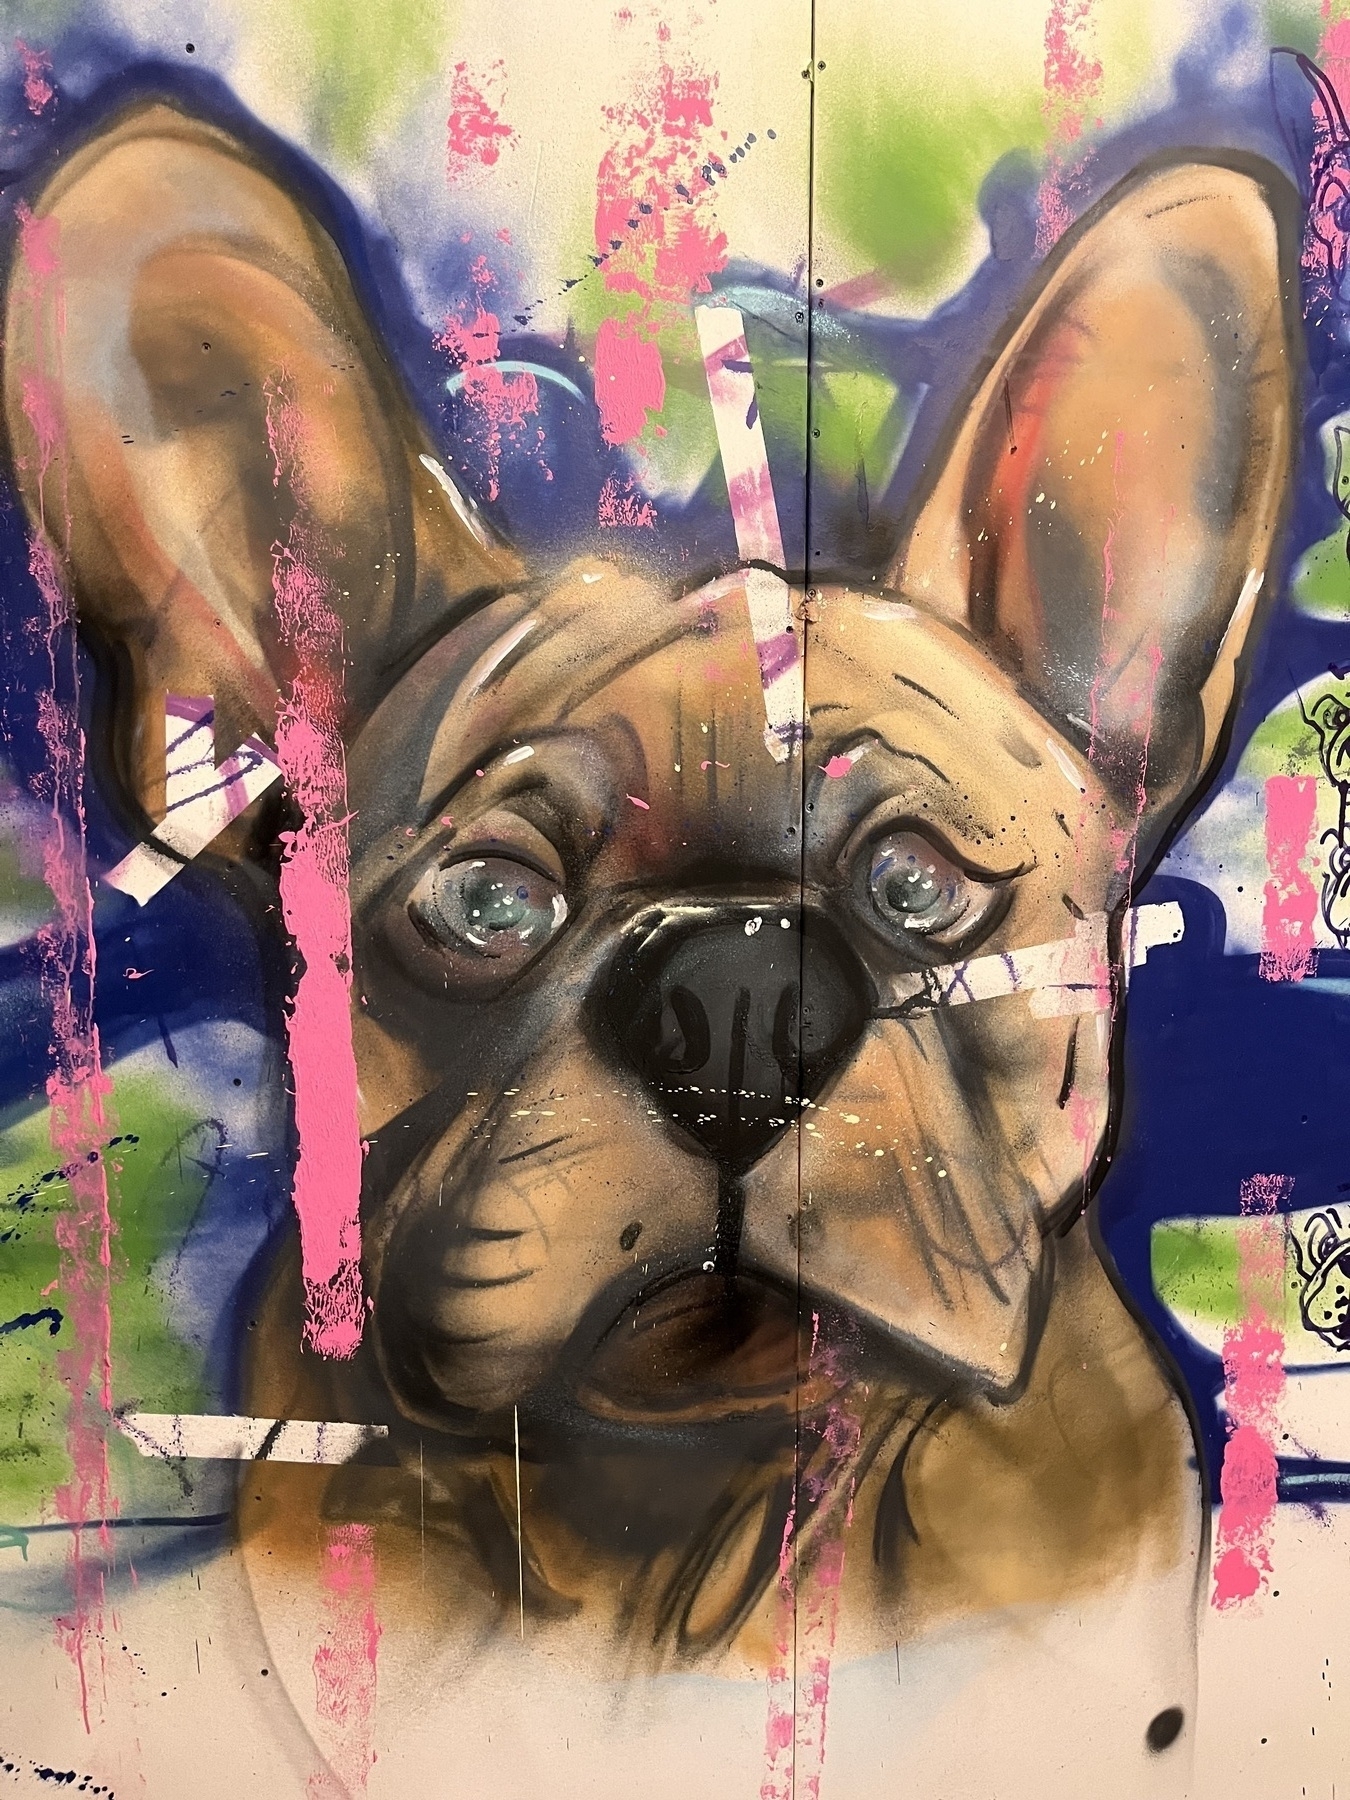 A photo of a sad eyed dog graffiti 